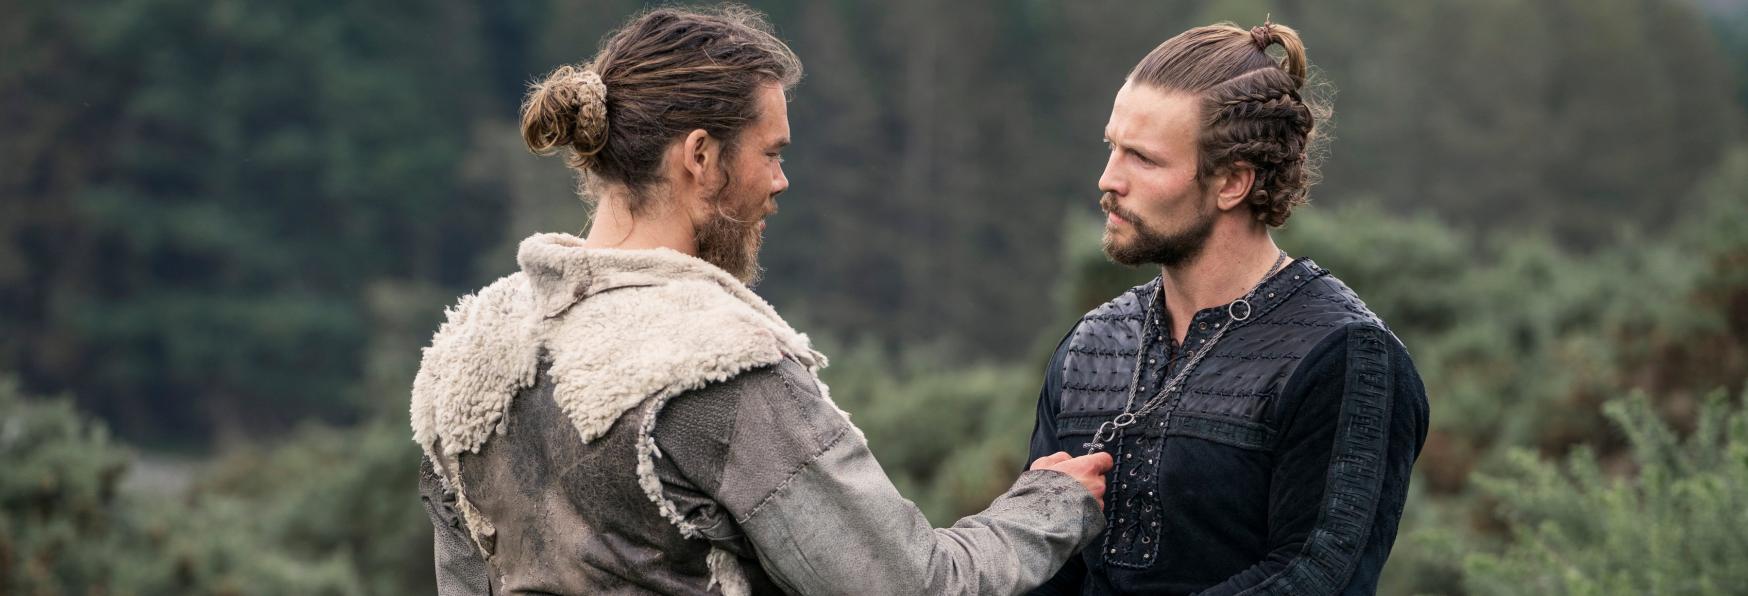 Vikings: Valhalla 2 - Netflix svela la Data di Uscita e pubblica le Prime Immagini della Nuova Stagione 